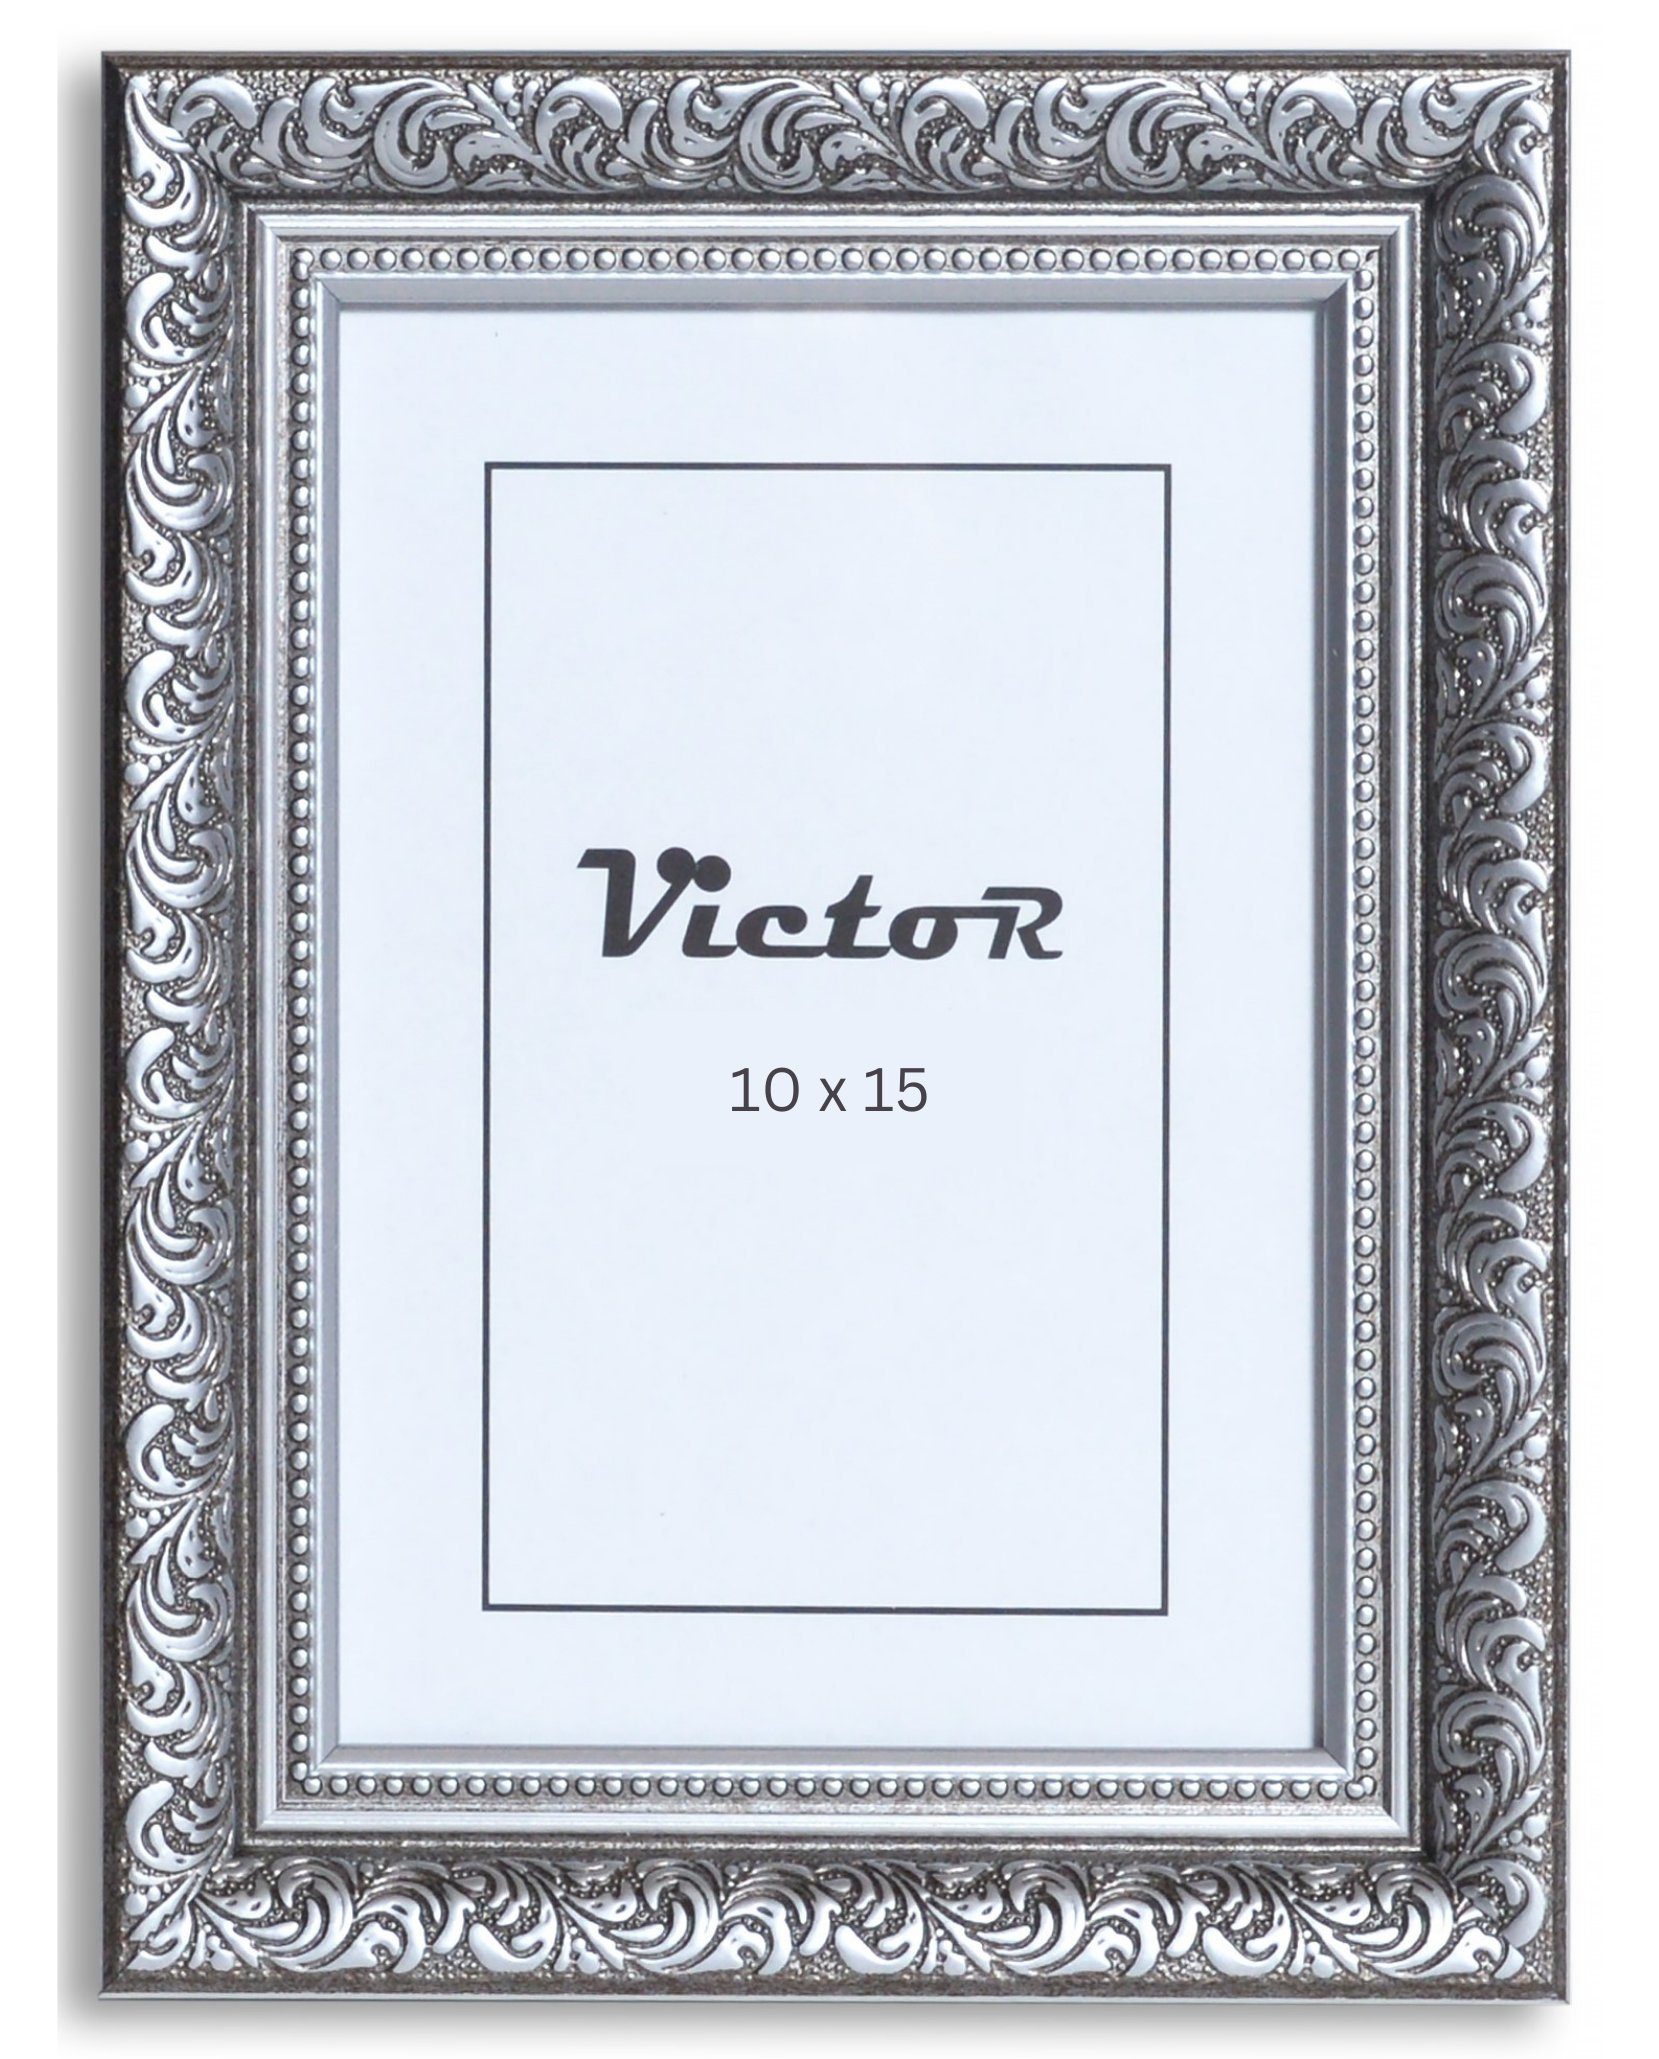 Victor (Zenith) Bilderrahmen Rubens, Bilderrahmen 10x15 cm Schwarz Silber A6, Bilderrahmen Barock, Antik | Einzelrahmen